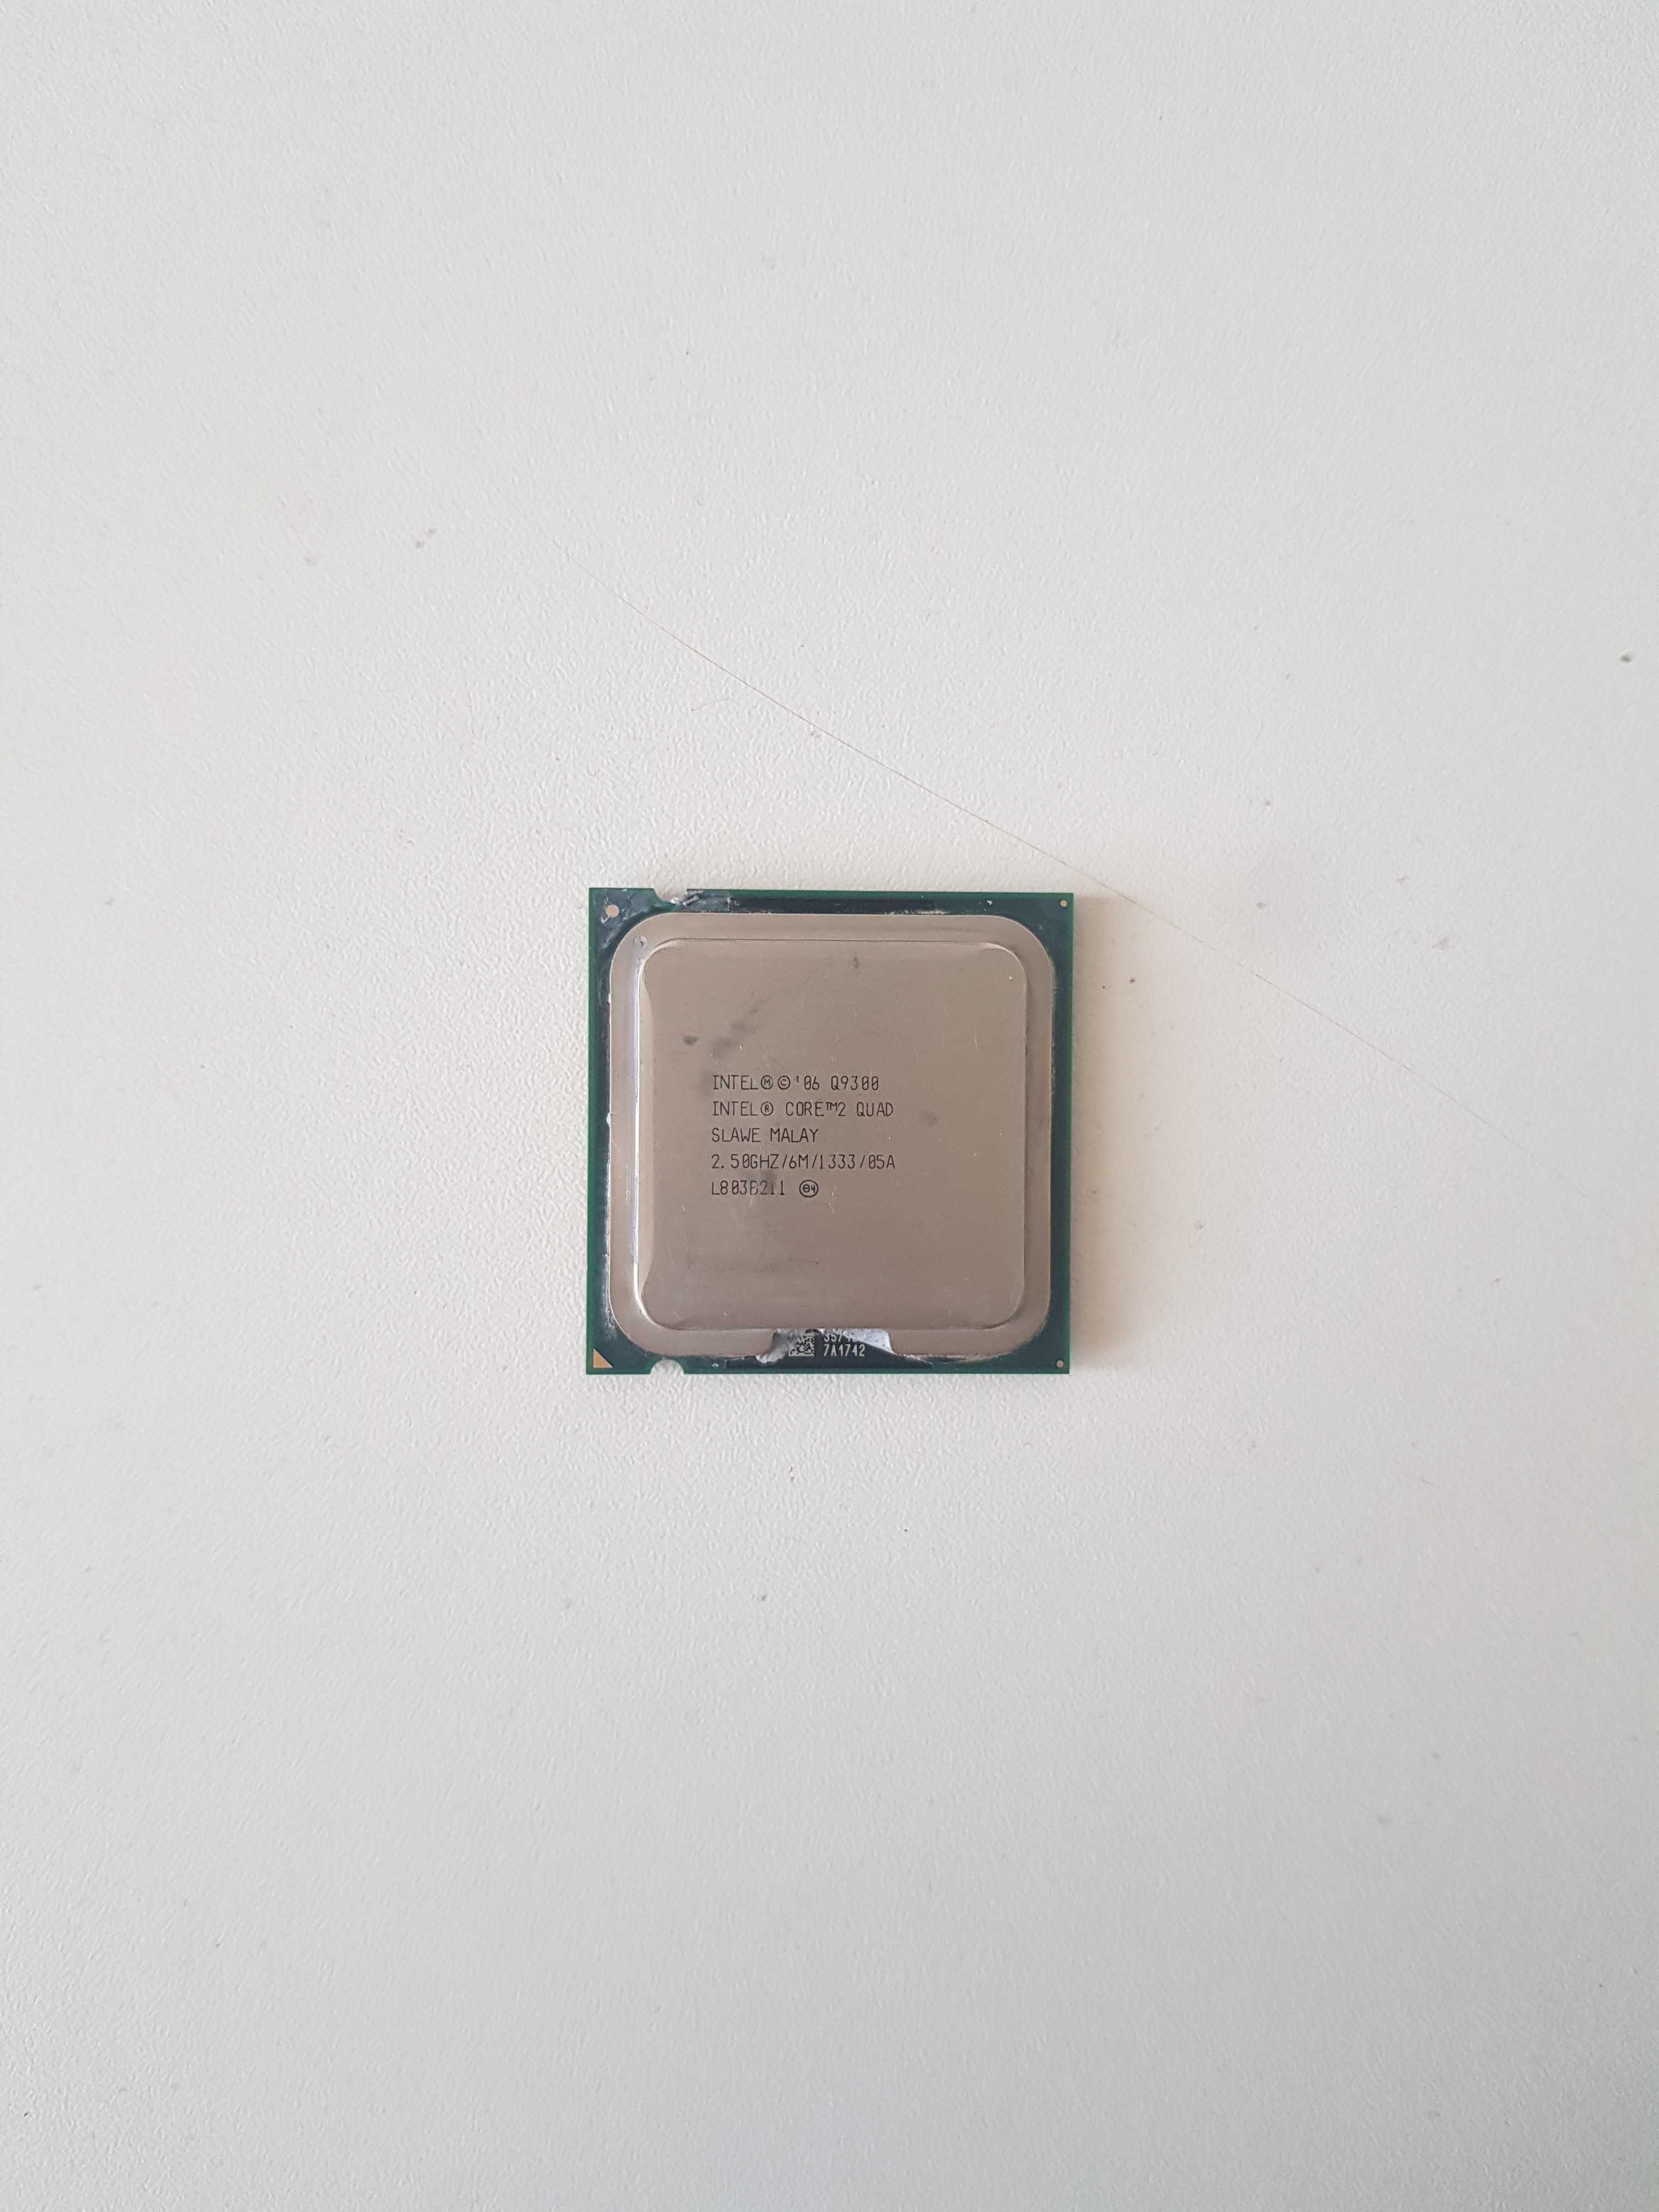 Intel Core 2 Quad Q9300 2.5GHz